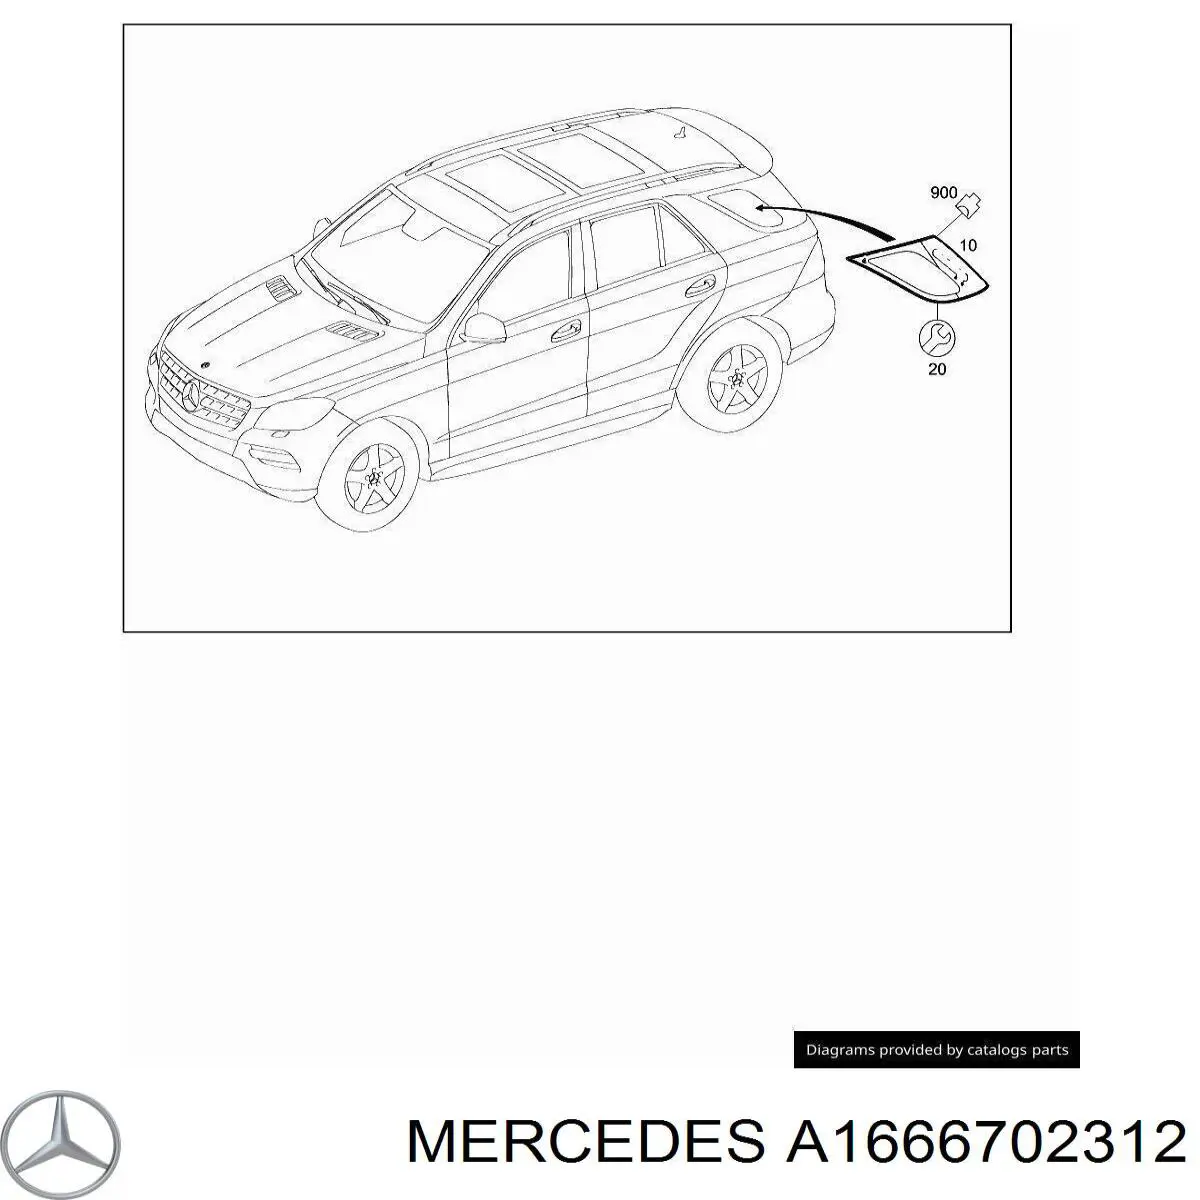 1666702312 Mercedes ventanilla costado superior izquierda (lado maletero)